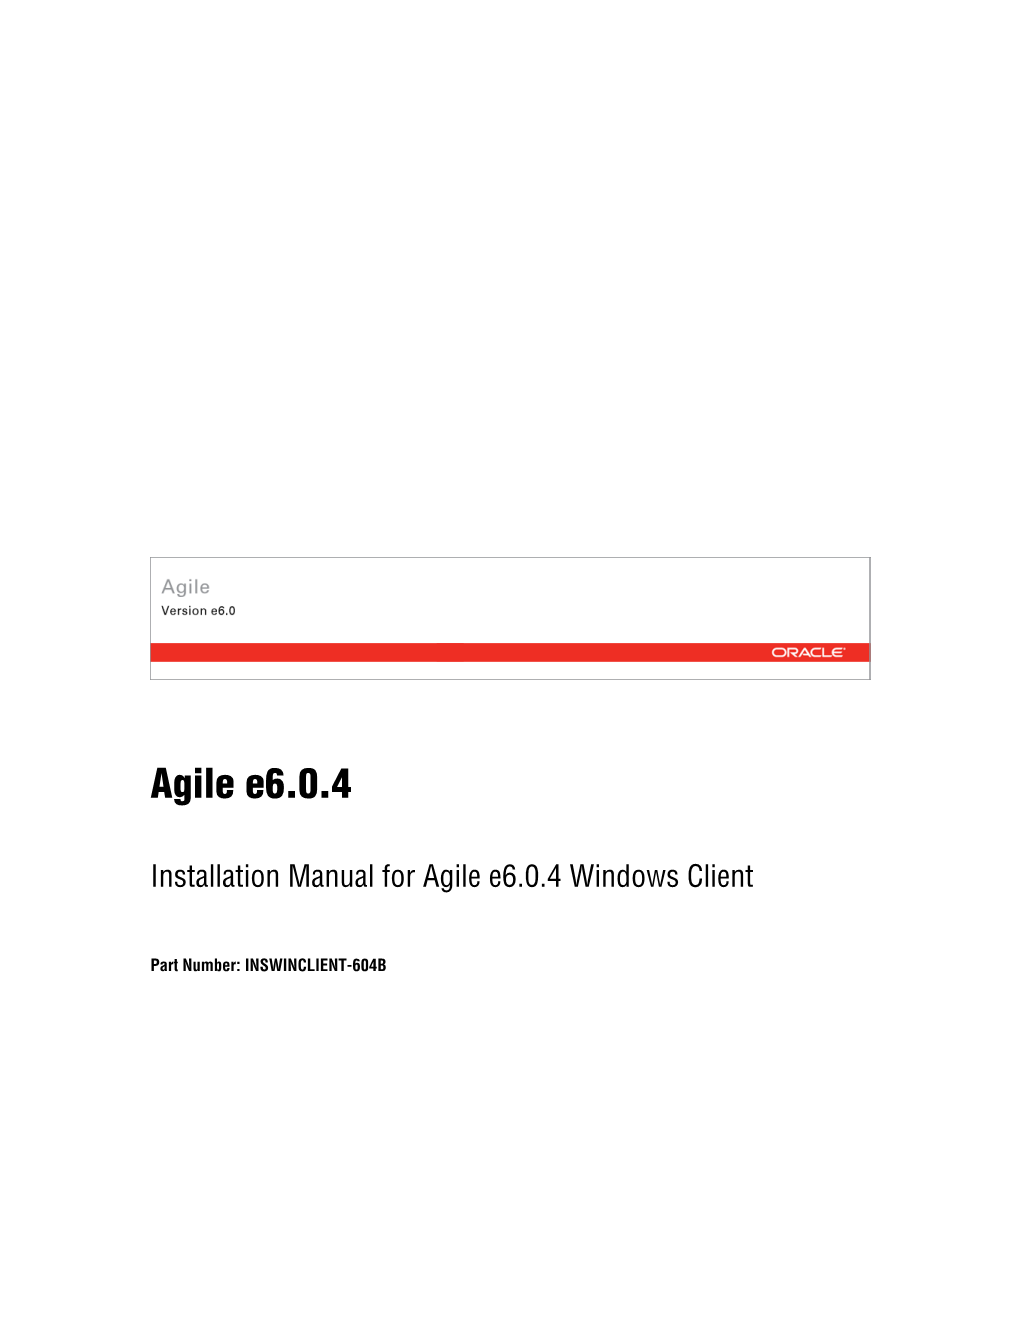 Agile E6.0.4